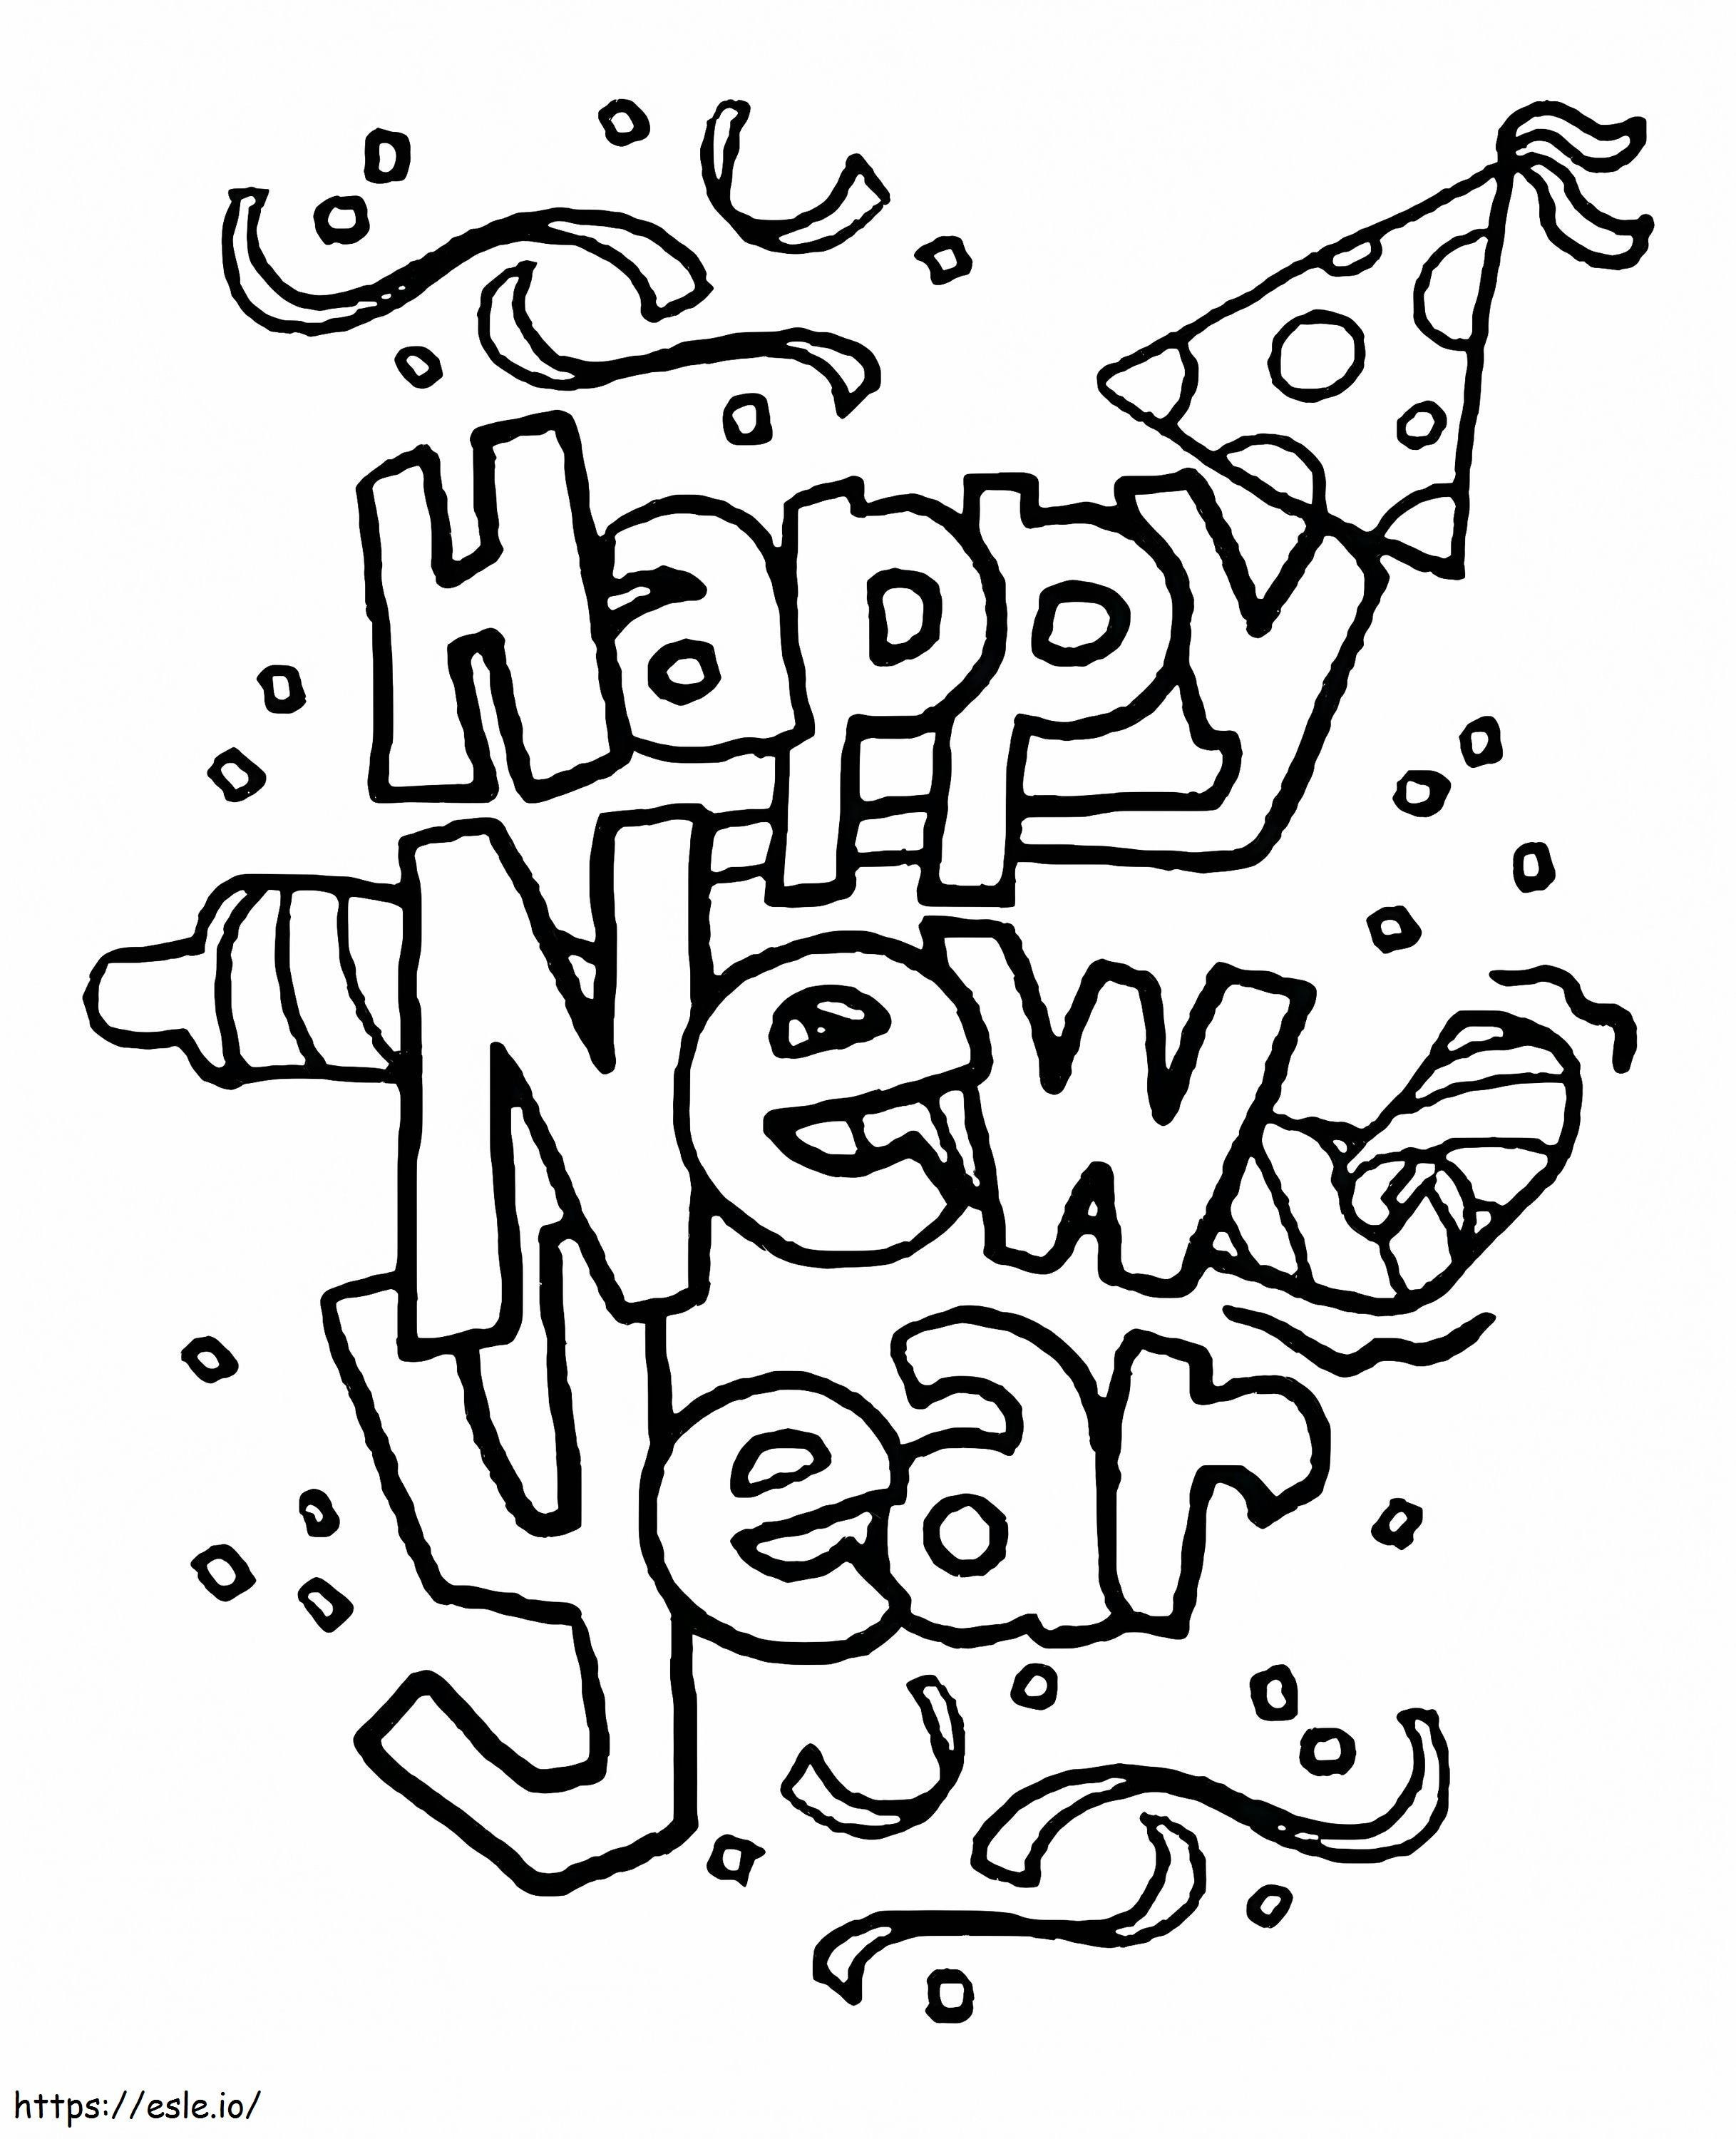 1545785959 Yeni Yıl Ücretsiz Yazdırılabilirler Yeni Yıl Arifesi Ücretsiz E Çocuklar Ücretsiz Yazdırılabilir Shopkins'te boyama